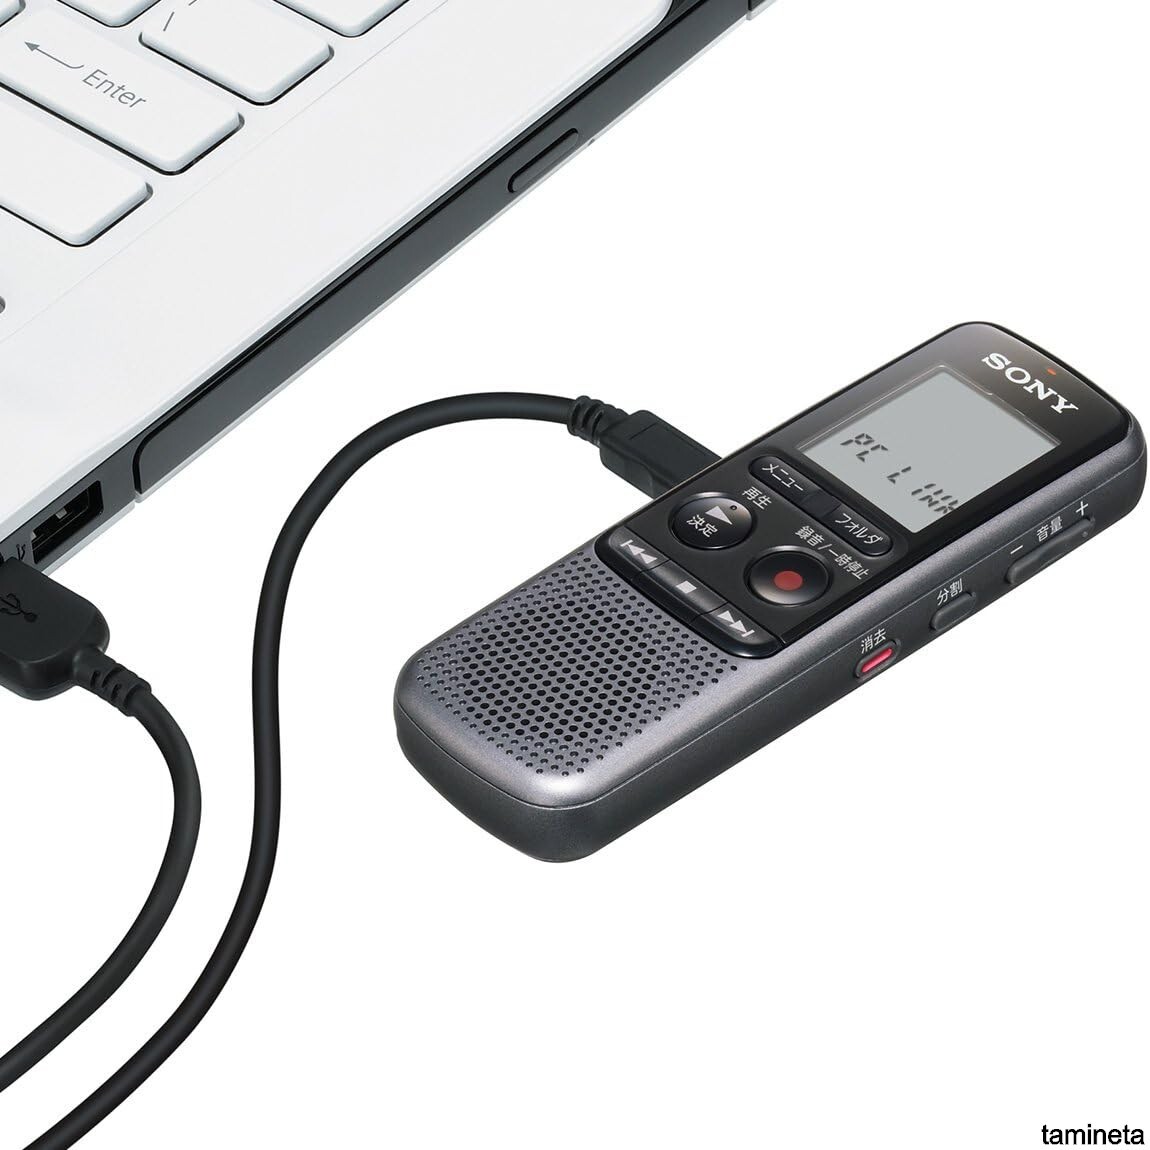  Sony IC магнитофон шум cut фильтр установка . шум снижение!! ICD-PX240 одиночный 4 батарейка соответствует диктофон 4GB. спросив . спросив настройка возможность природа звук 